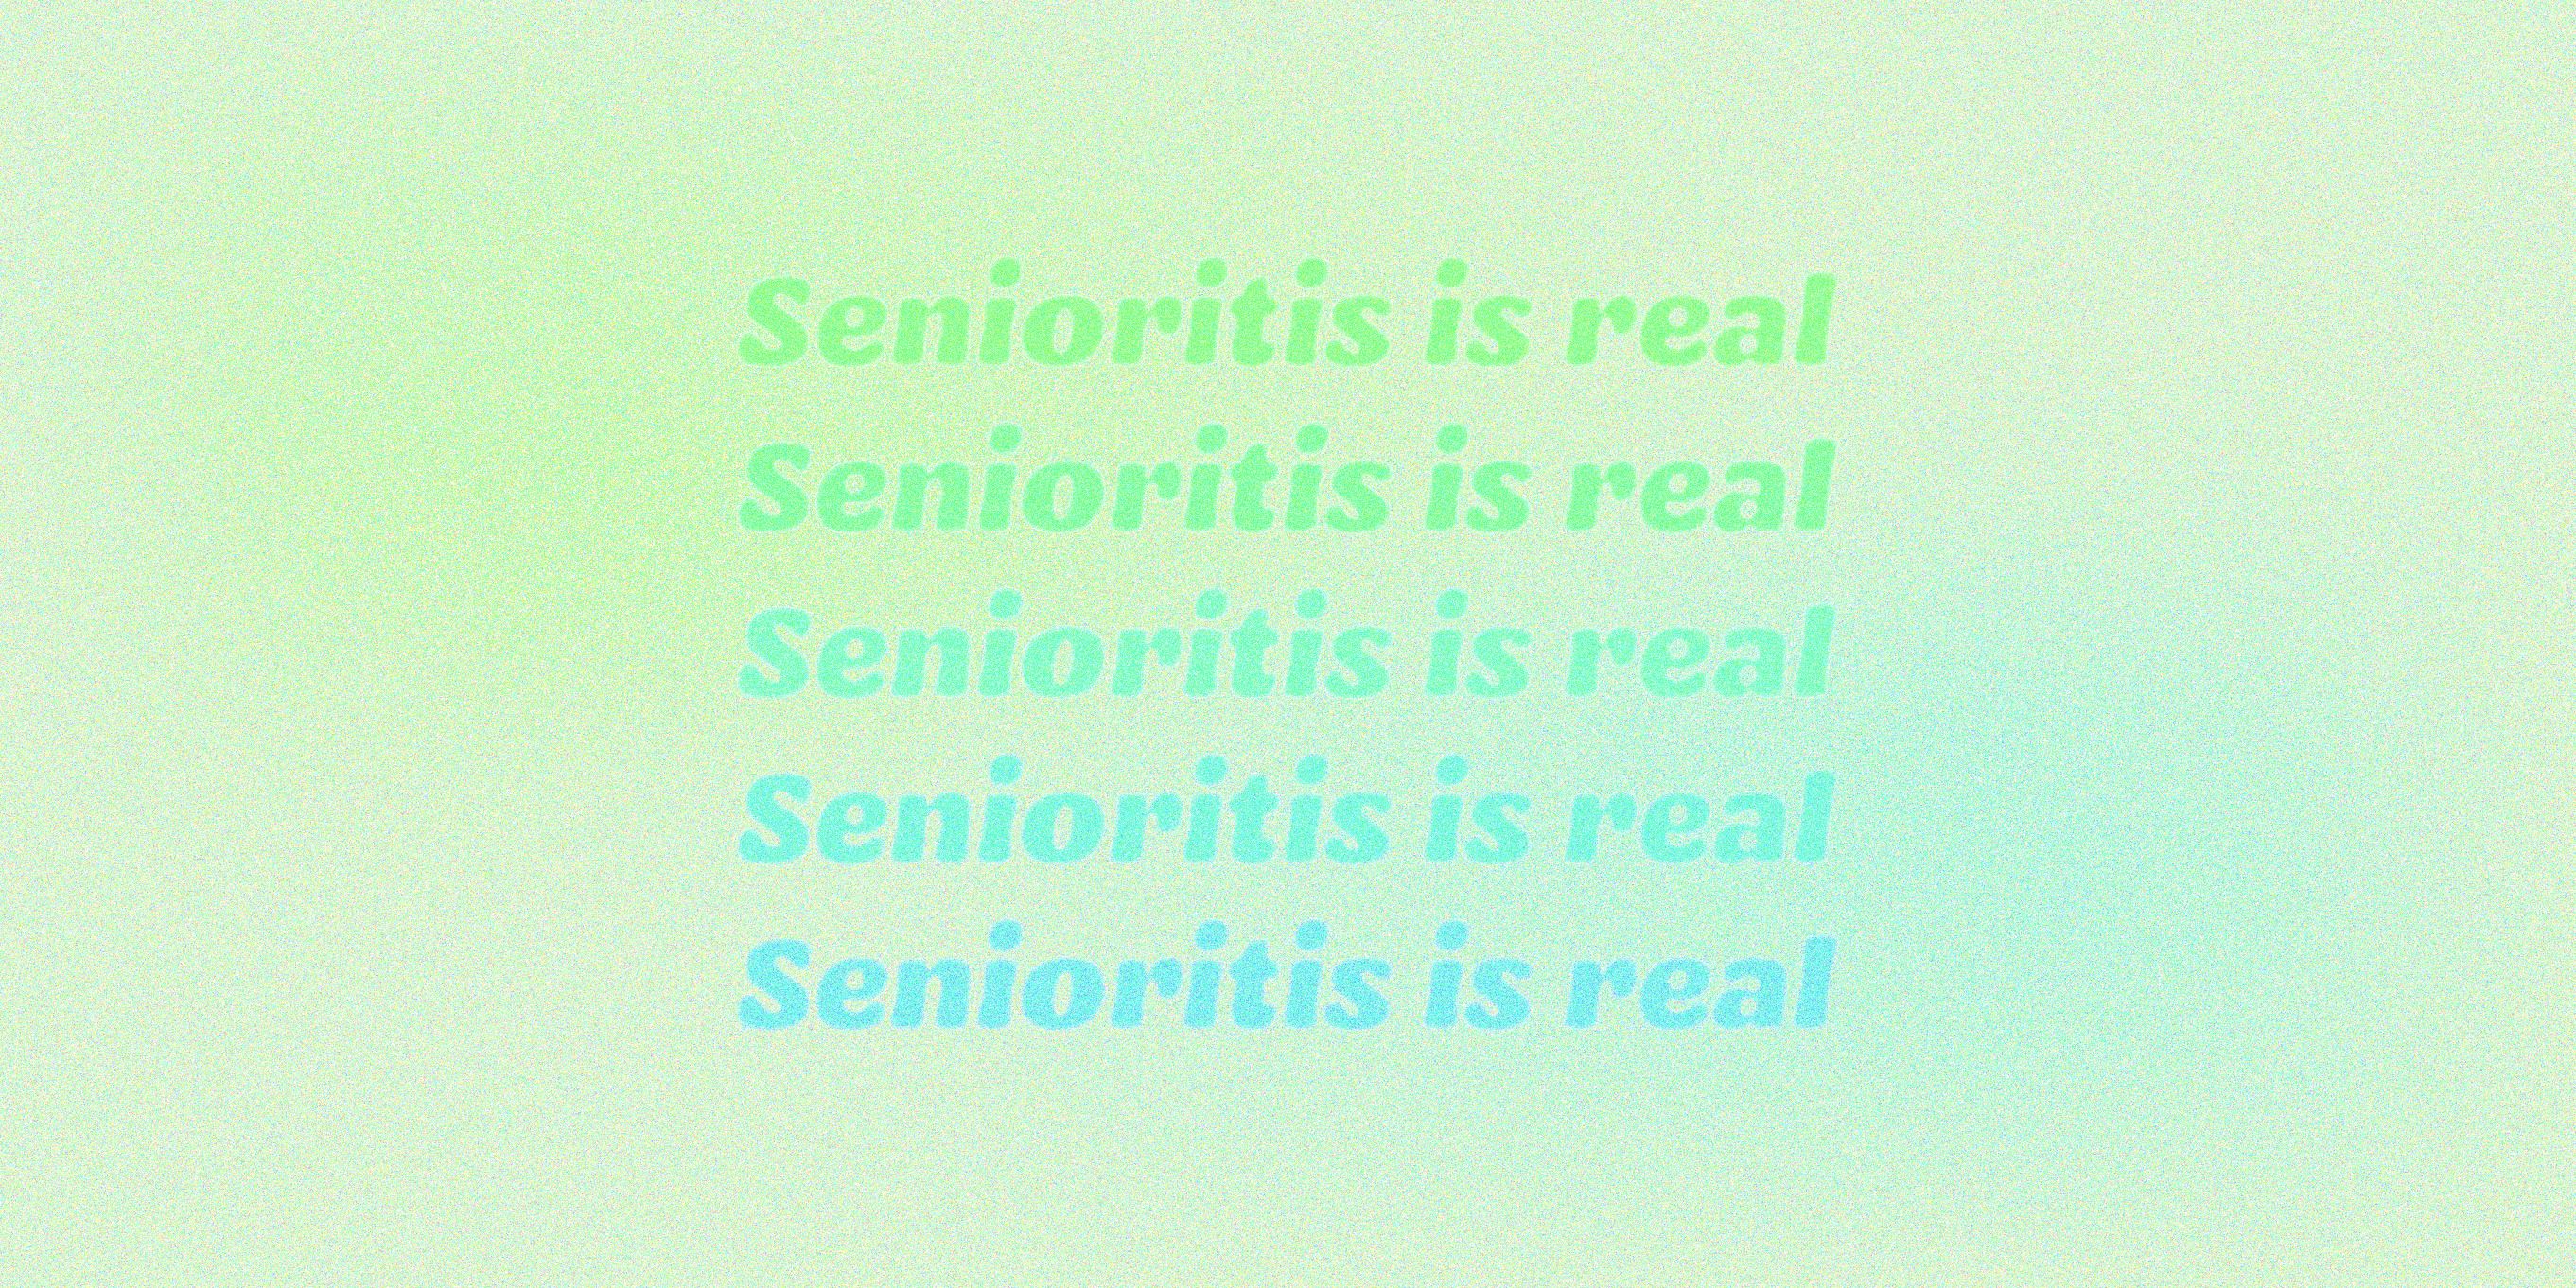 high school quotes seniors